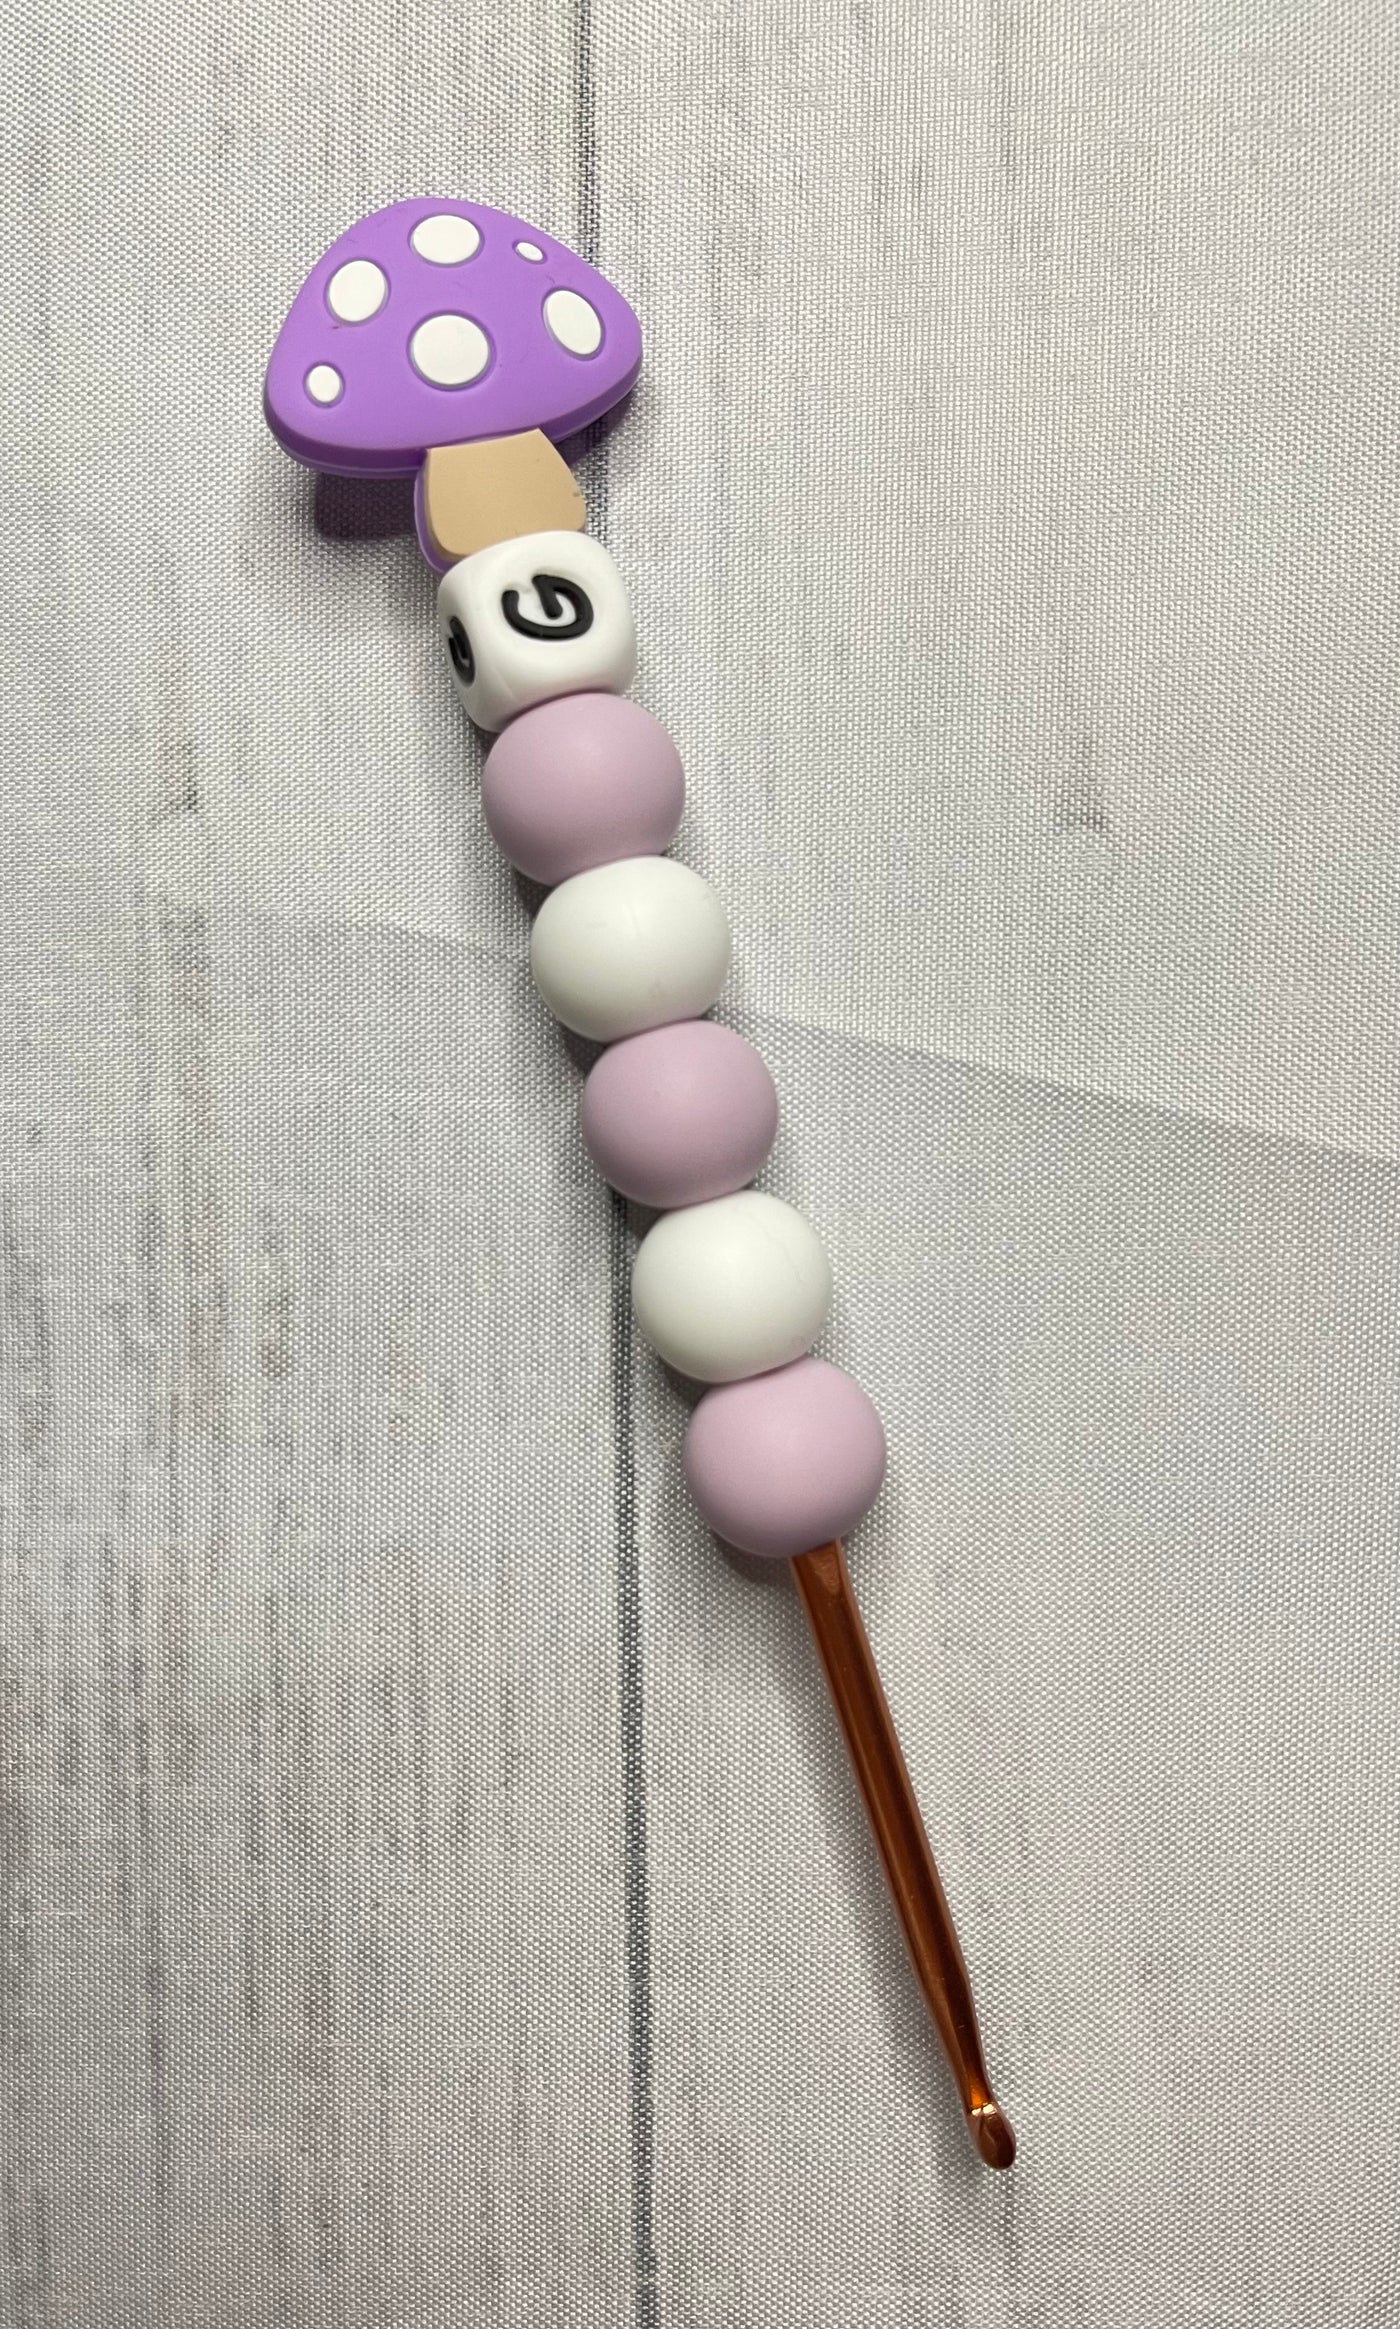 Purple Mushroom Ergonomic Crochet Hook